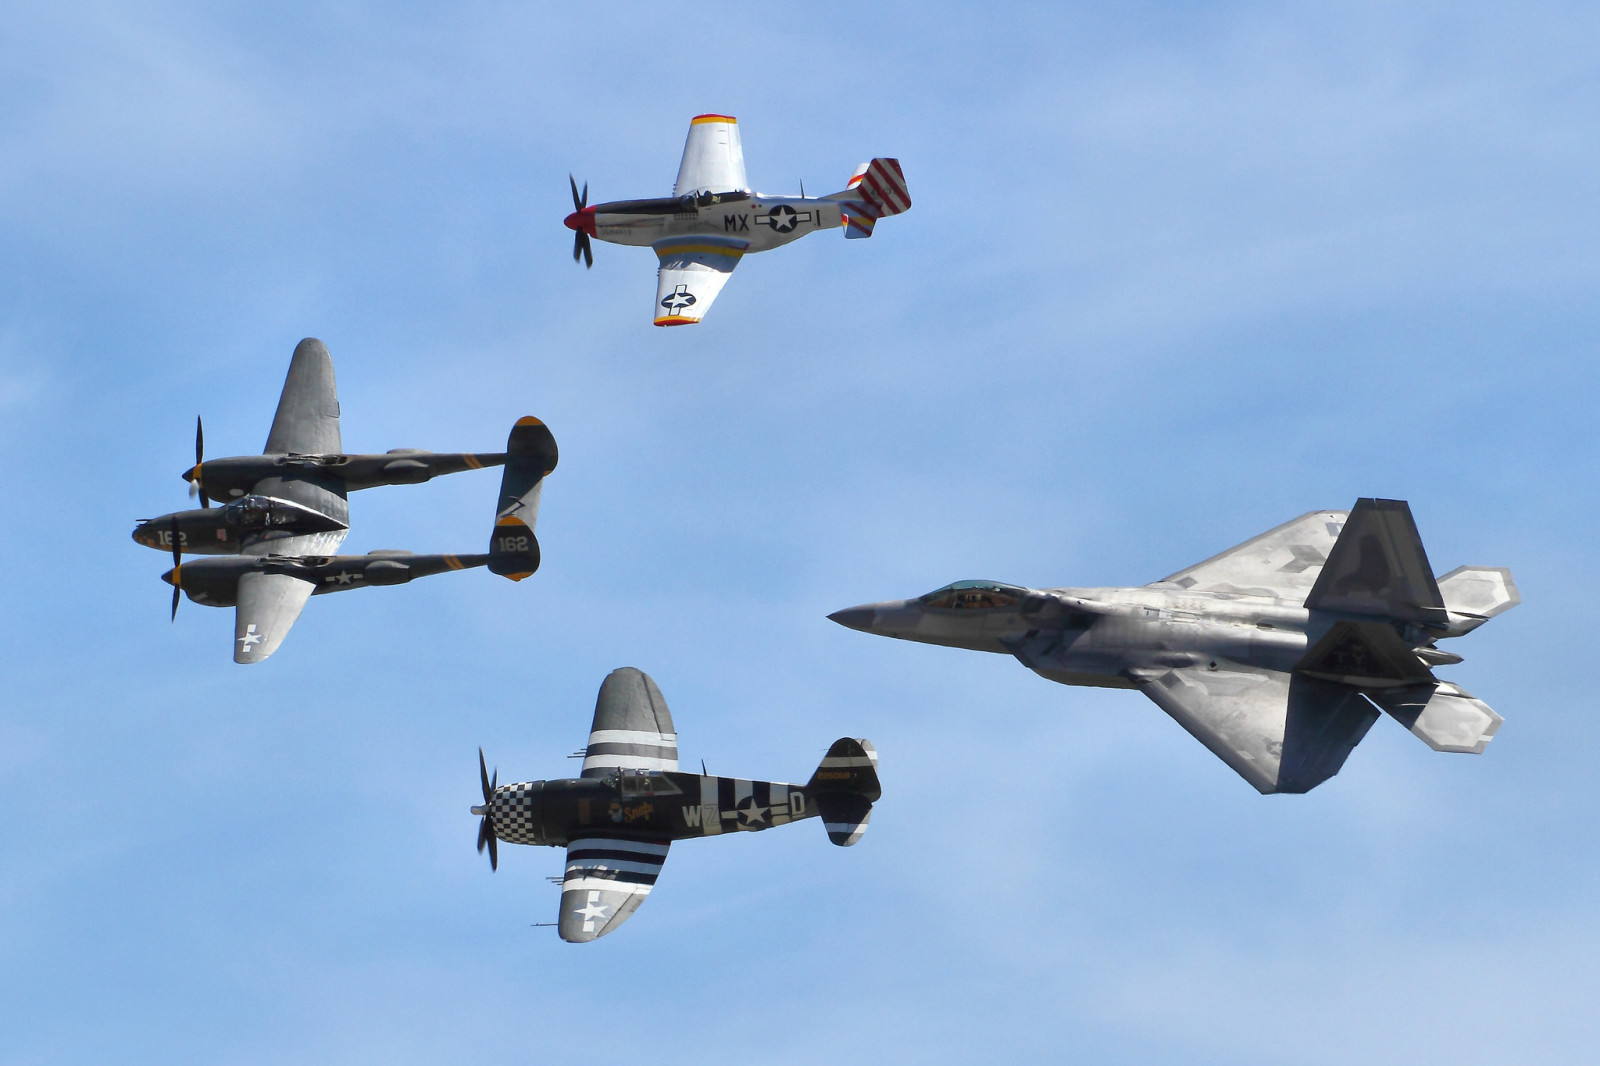 머스탱, 비행, P-51, 번개, 벼락, F-22 랩터, P-38, P47